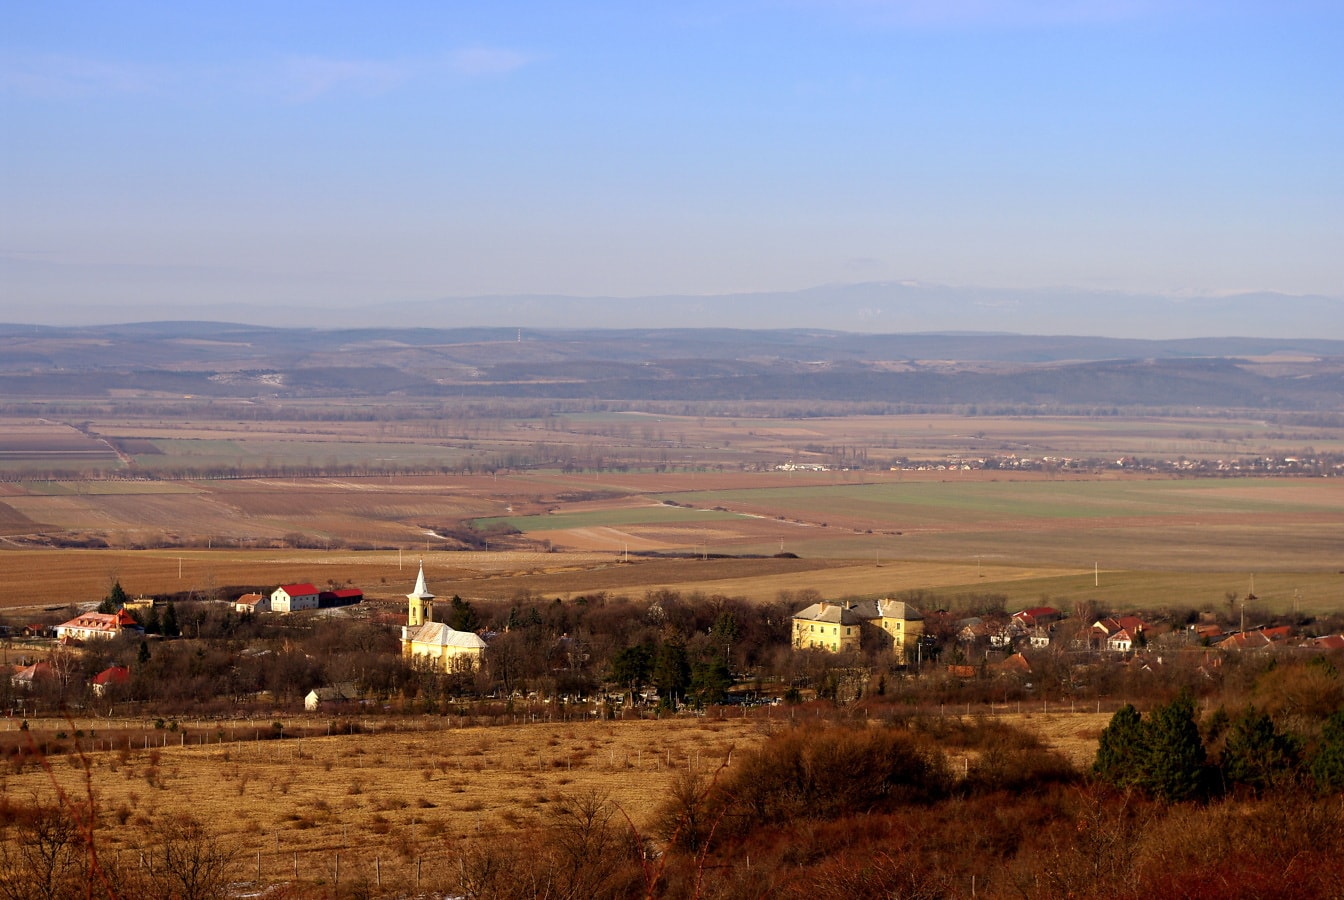 Vue panoramique sur la campagne, les champs et le peuplement depuis le flanc de la colline